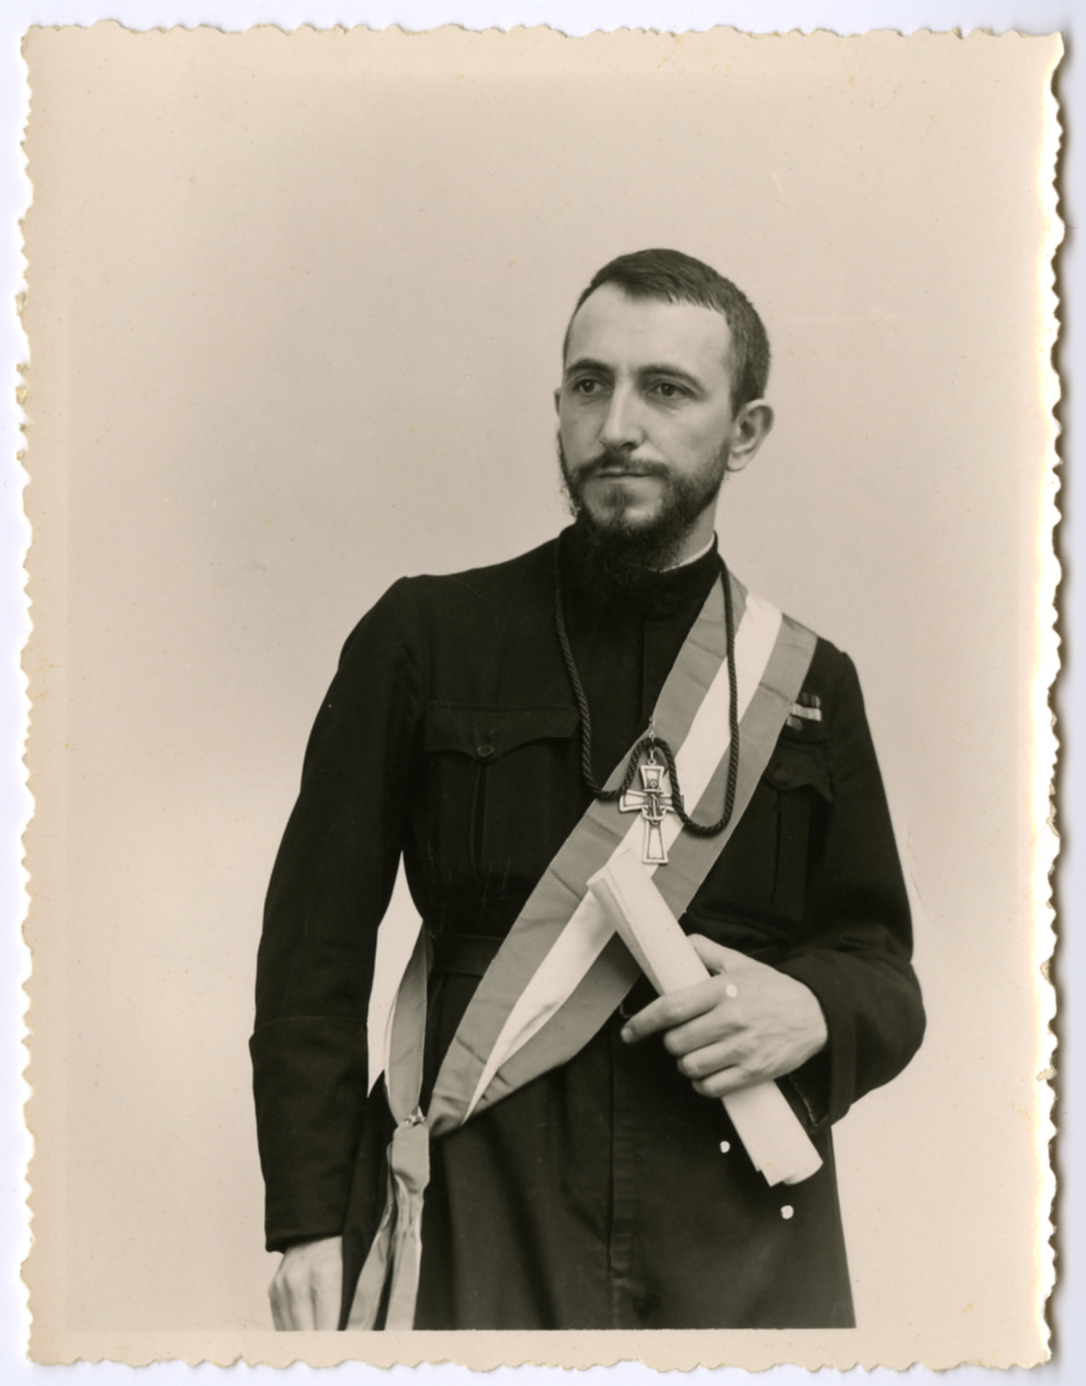 Portrait de l’abbé Pierre, député, portant la croix d’aumônier de marine, l’écharpe tricolore, ses décorations militaires et l’insigne de député. ©Emmaüs International